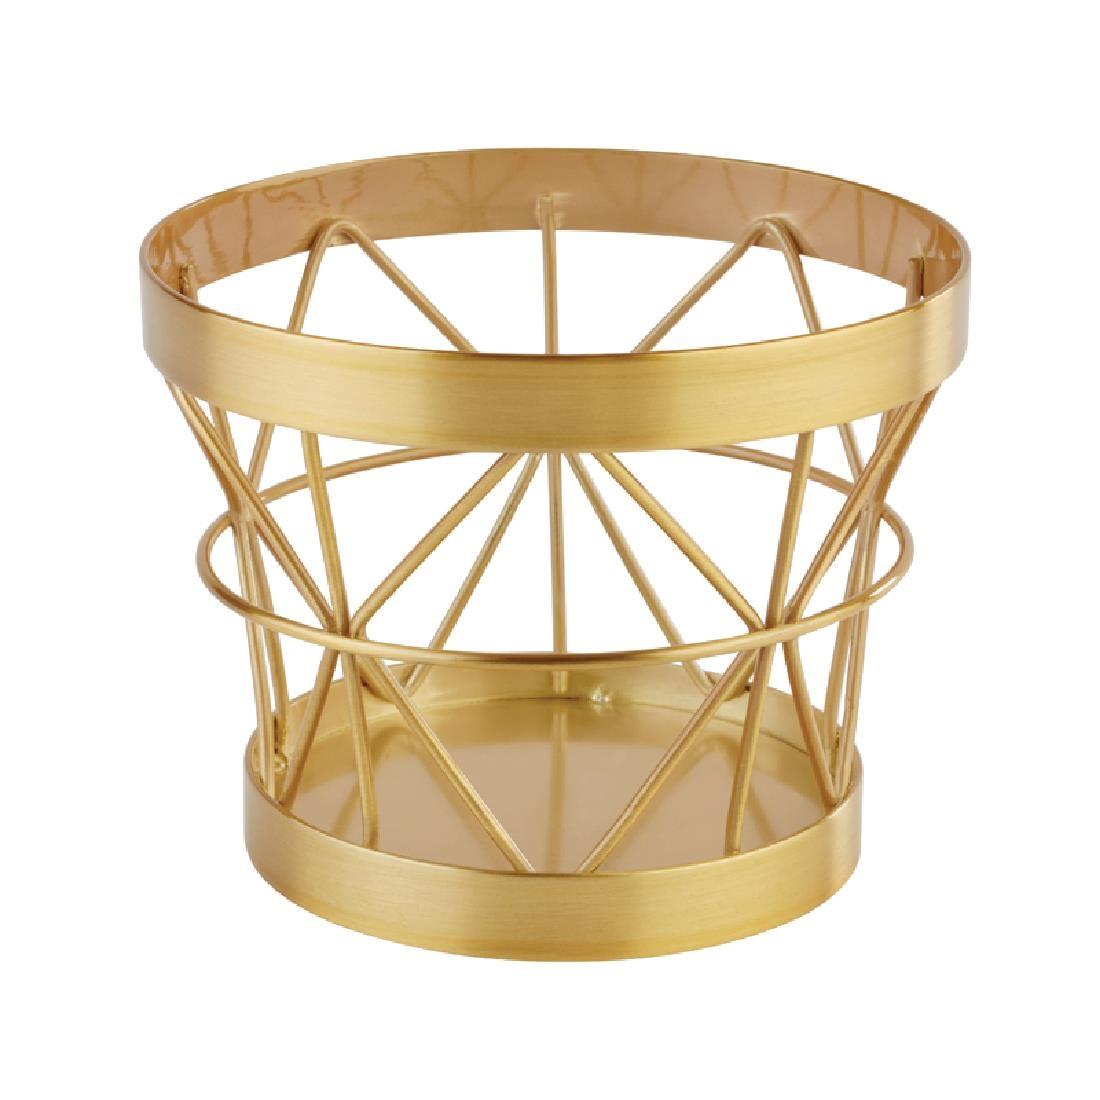 APS+ Metal Basket Gold Brushed 80 x 105mm - CW699  - 1